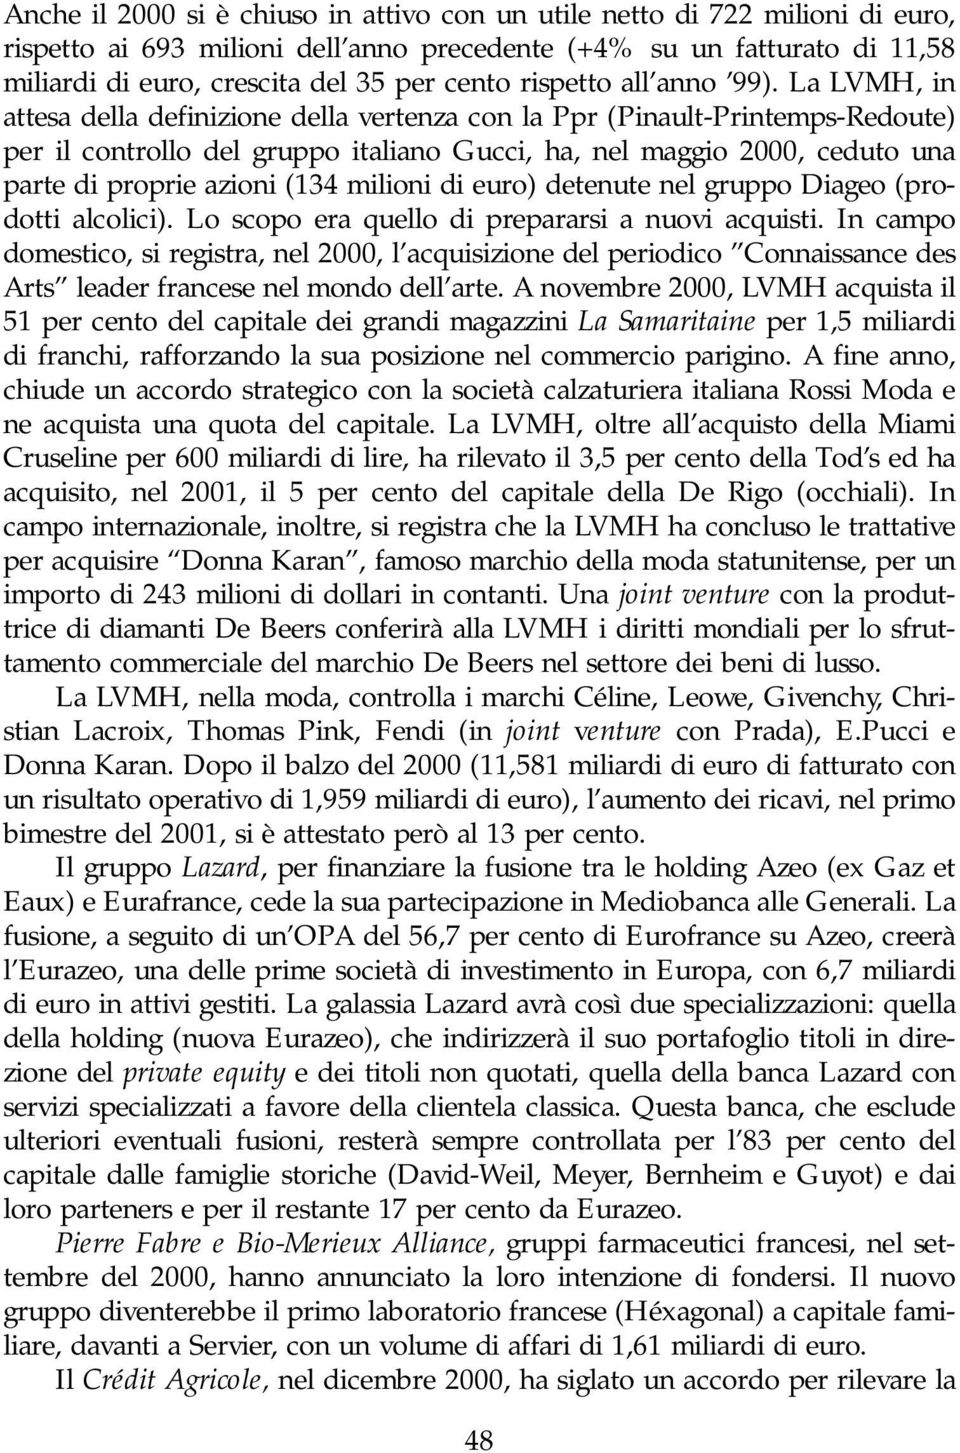 La LVMH, in attesa della definizione della vertenza con la Ppr (Pinault-Printemps-Redoute) per il controllo del gruppo italiano Gucci, ha, nel maggio 2000, ceduto una parte di proprie azioni (134